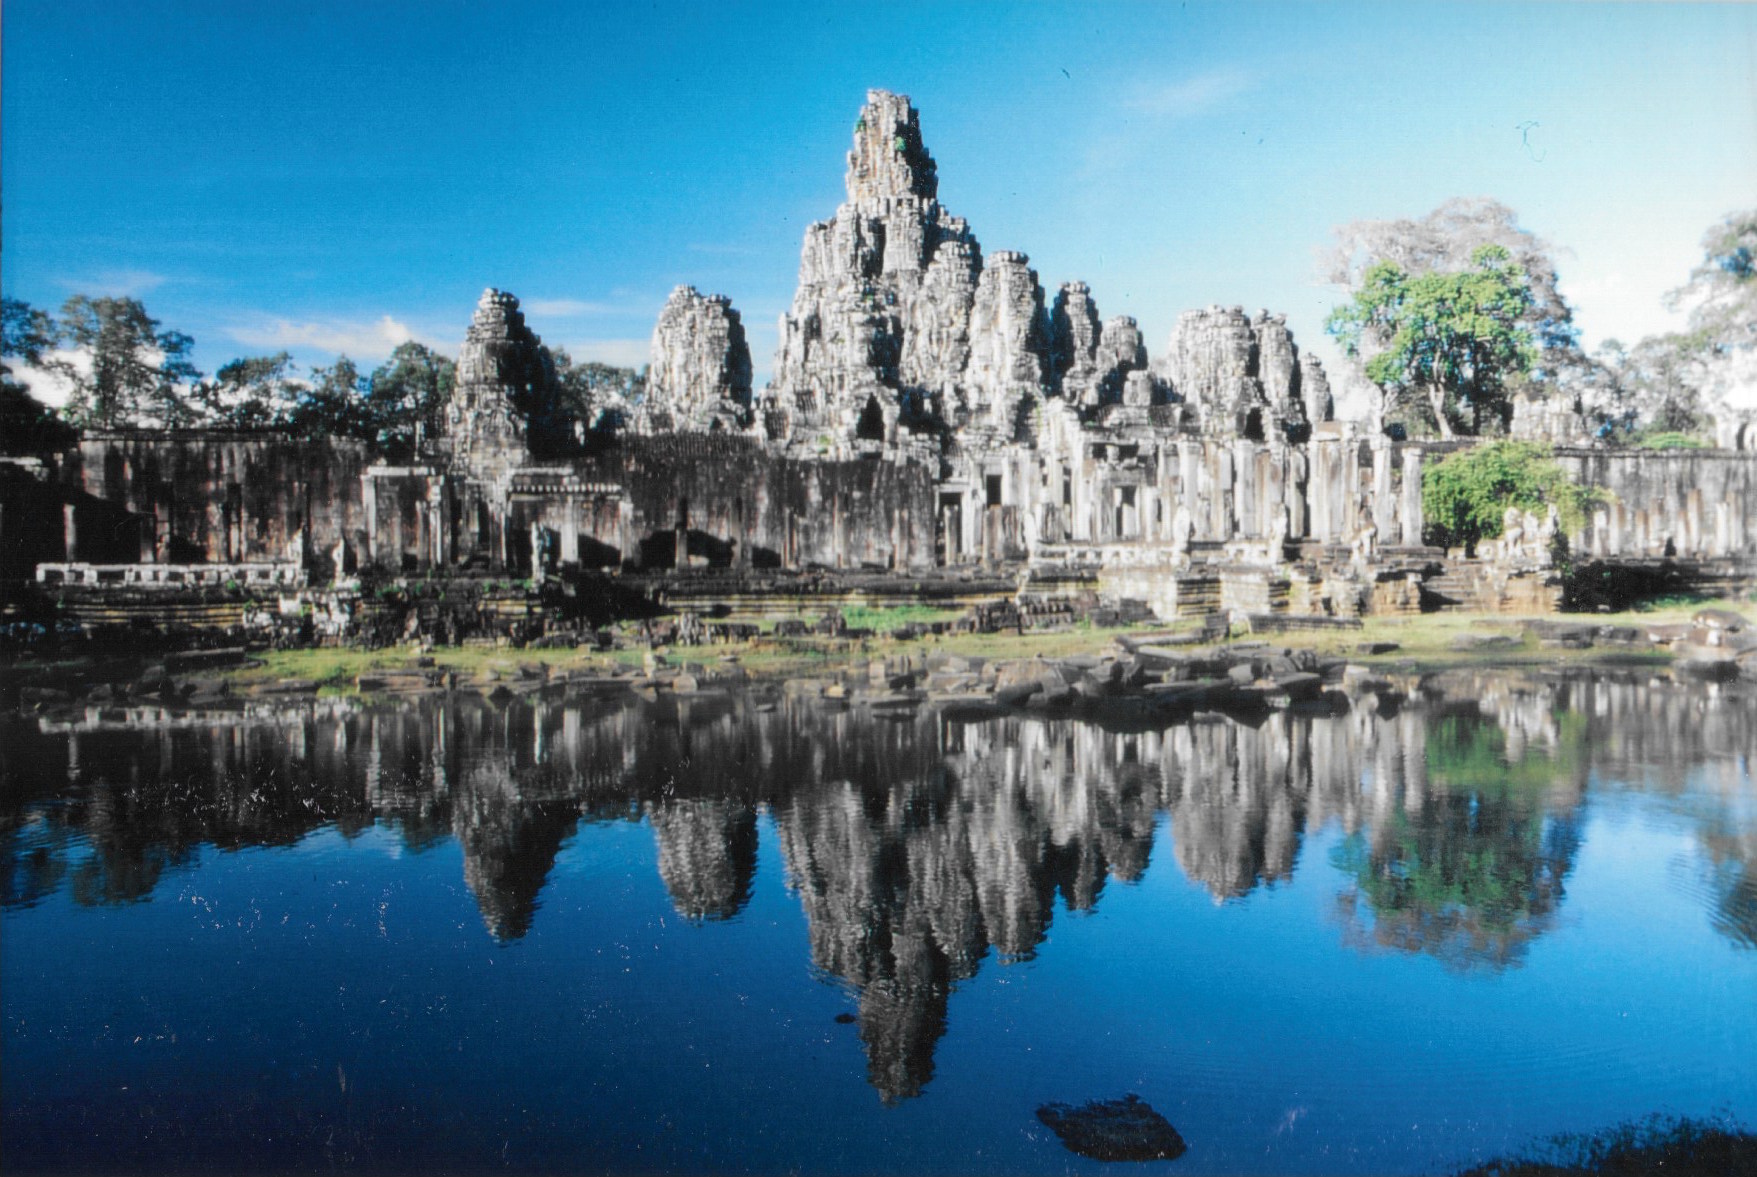 Le somptueux temple du Bayon se mirant dans les eaux de ses douves. Son nom est dérivé d’une appellation signifiant palais du dieu Indra. Dû à Jayavarman VII, pour un culte bouddhique shivaite, il est daté de la toute fin du XIIe siècle et du début du XIIIe. On écrit Bayon, mais on prononce Bayonne, comme la ville française du Pays basque. Il est situé au centre géographique de l’immense enceinte d’Angkor Thom. Le temple est entouré d’une muraille dont les tours affichent quatre visages apparemment sereins, sinon mystérieusement indifférents. Des “Mona Lisa” asiatiques de pierre en quelque sorte....